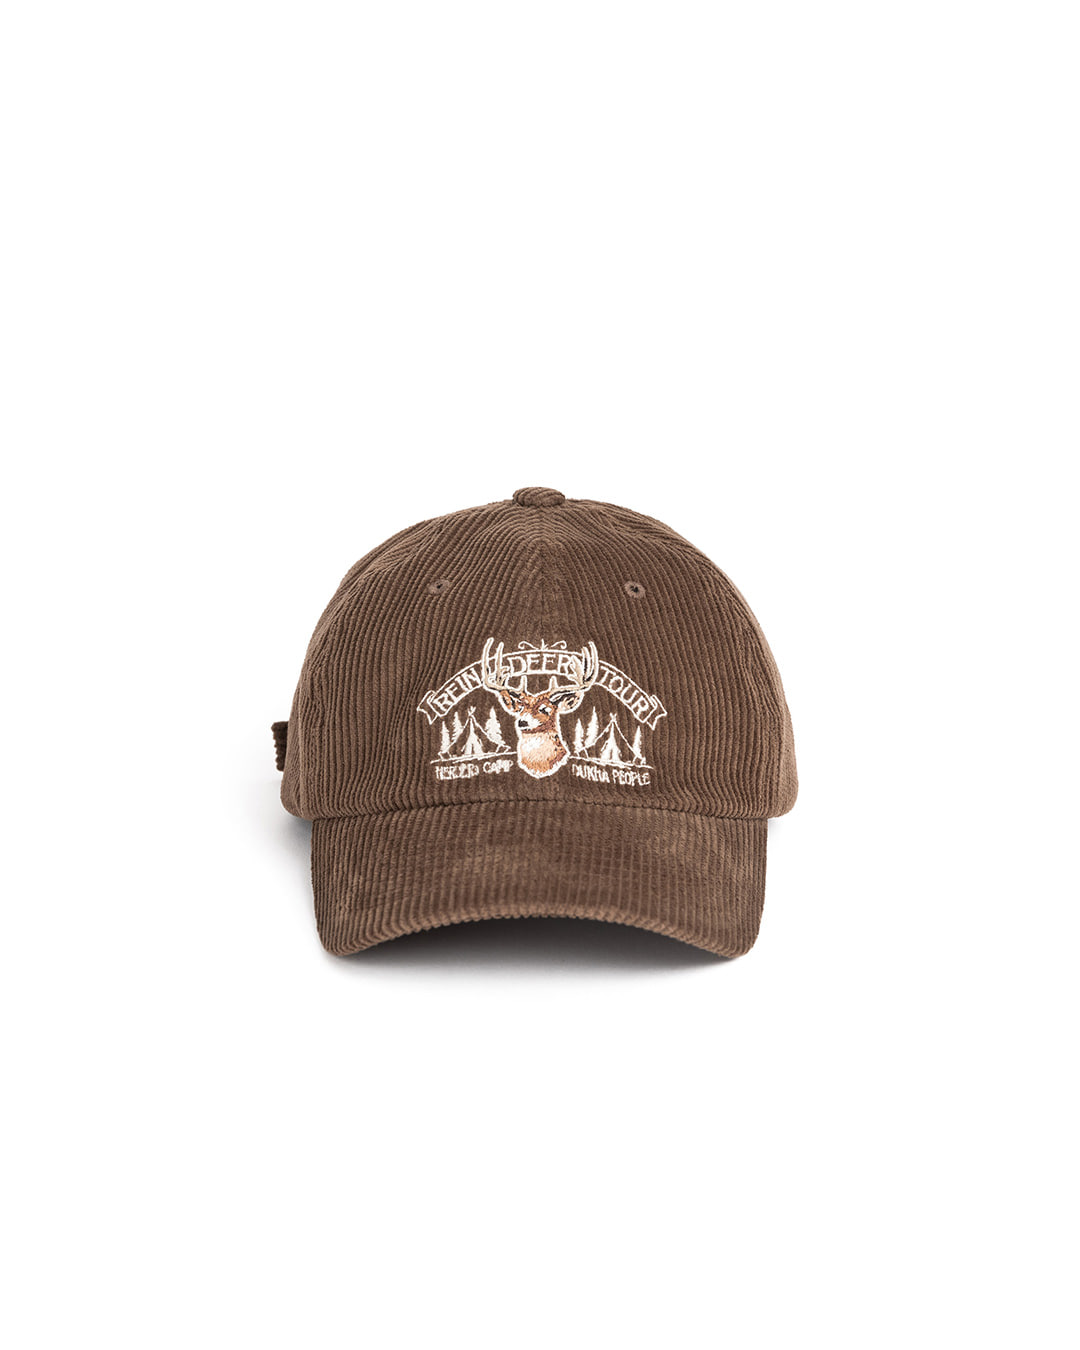 CORDUROY REINDEER CAP (brown)